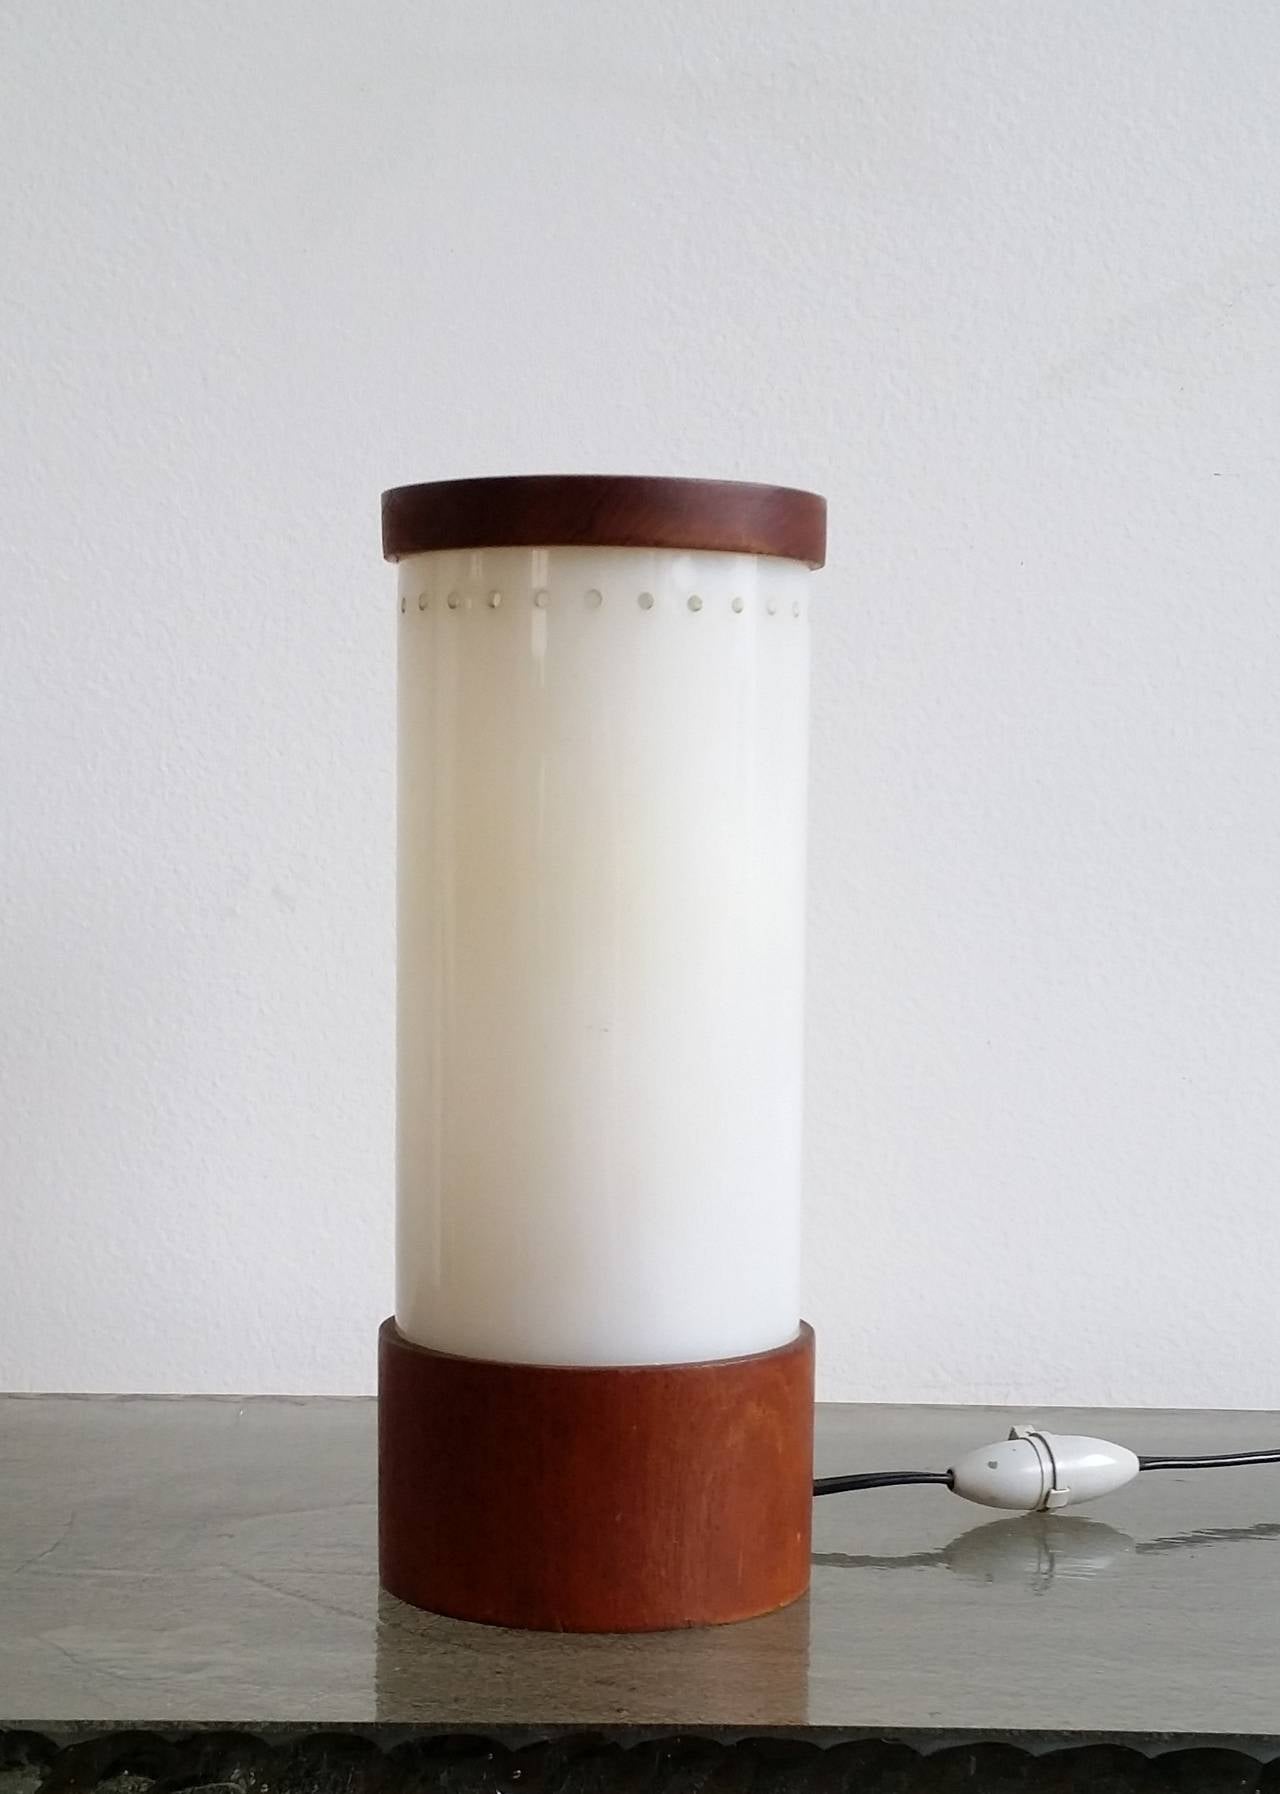 Mid-20th Century Bauhaus era perspex and teak table lamp - 1930's - Ipso Facto